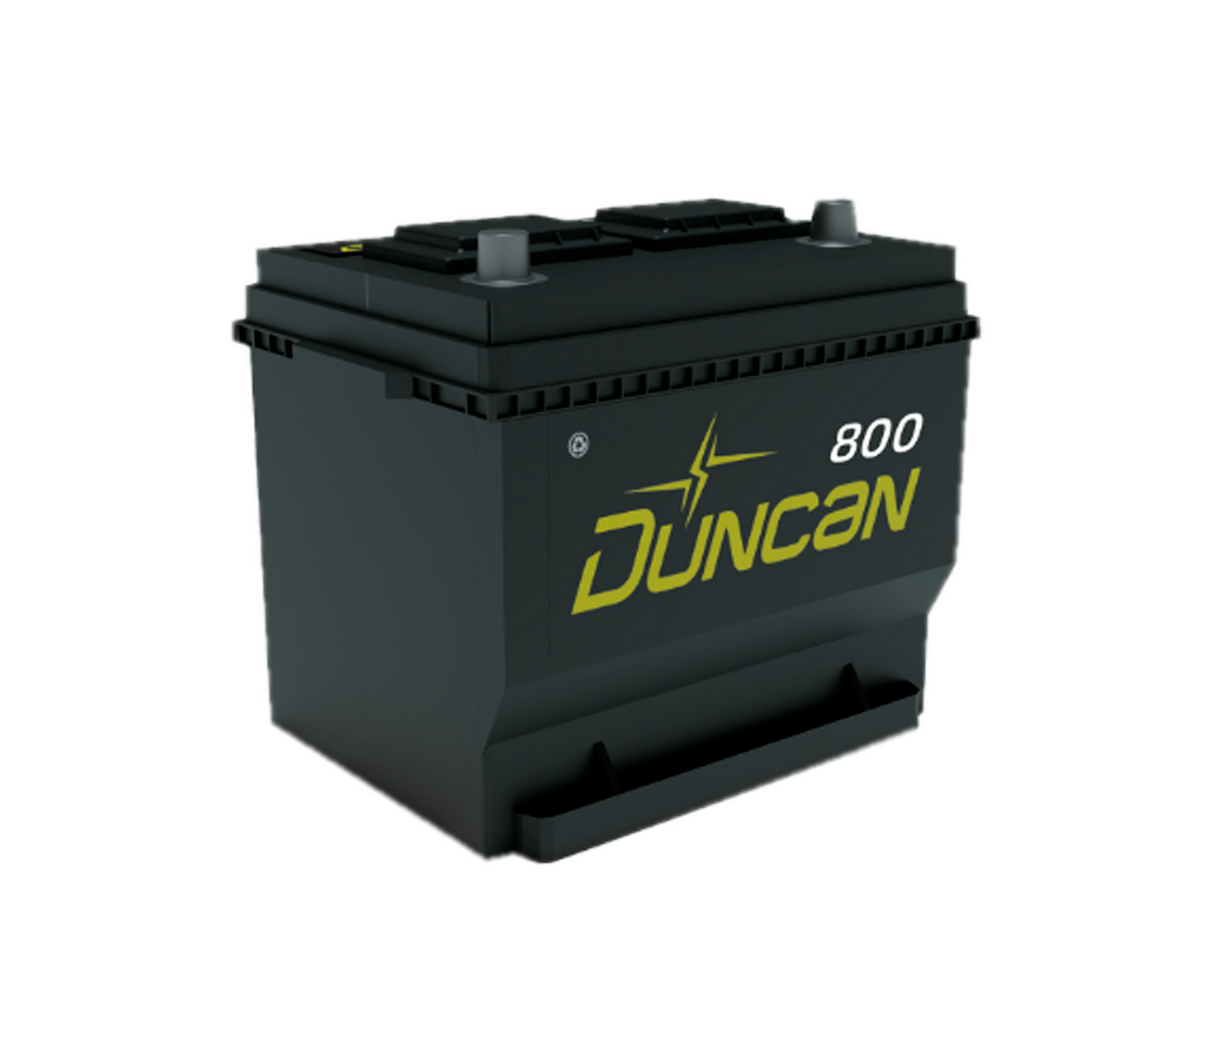 Batería de vehículo 24MR-800 Duncan